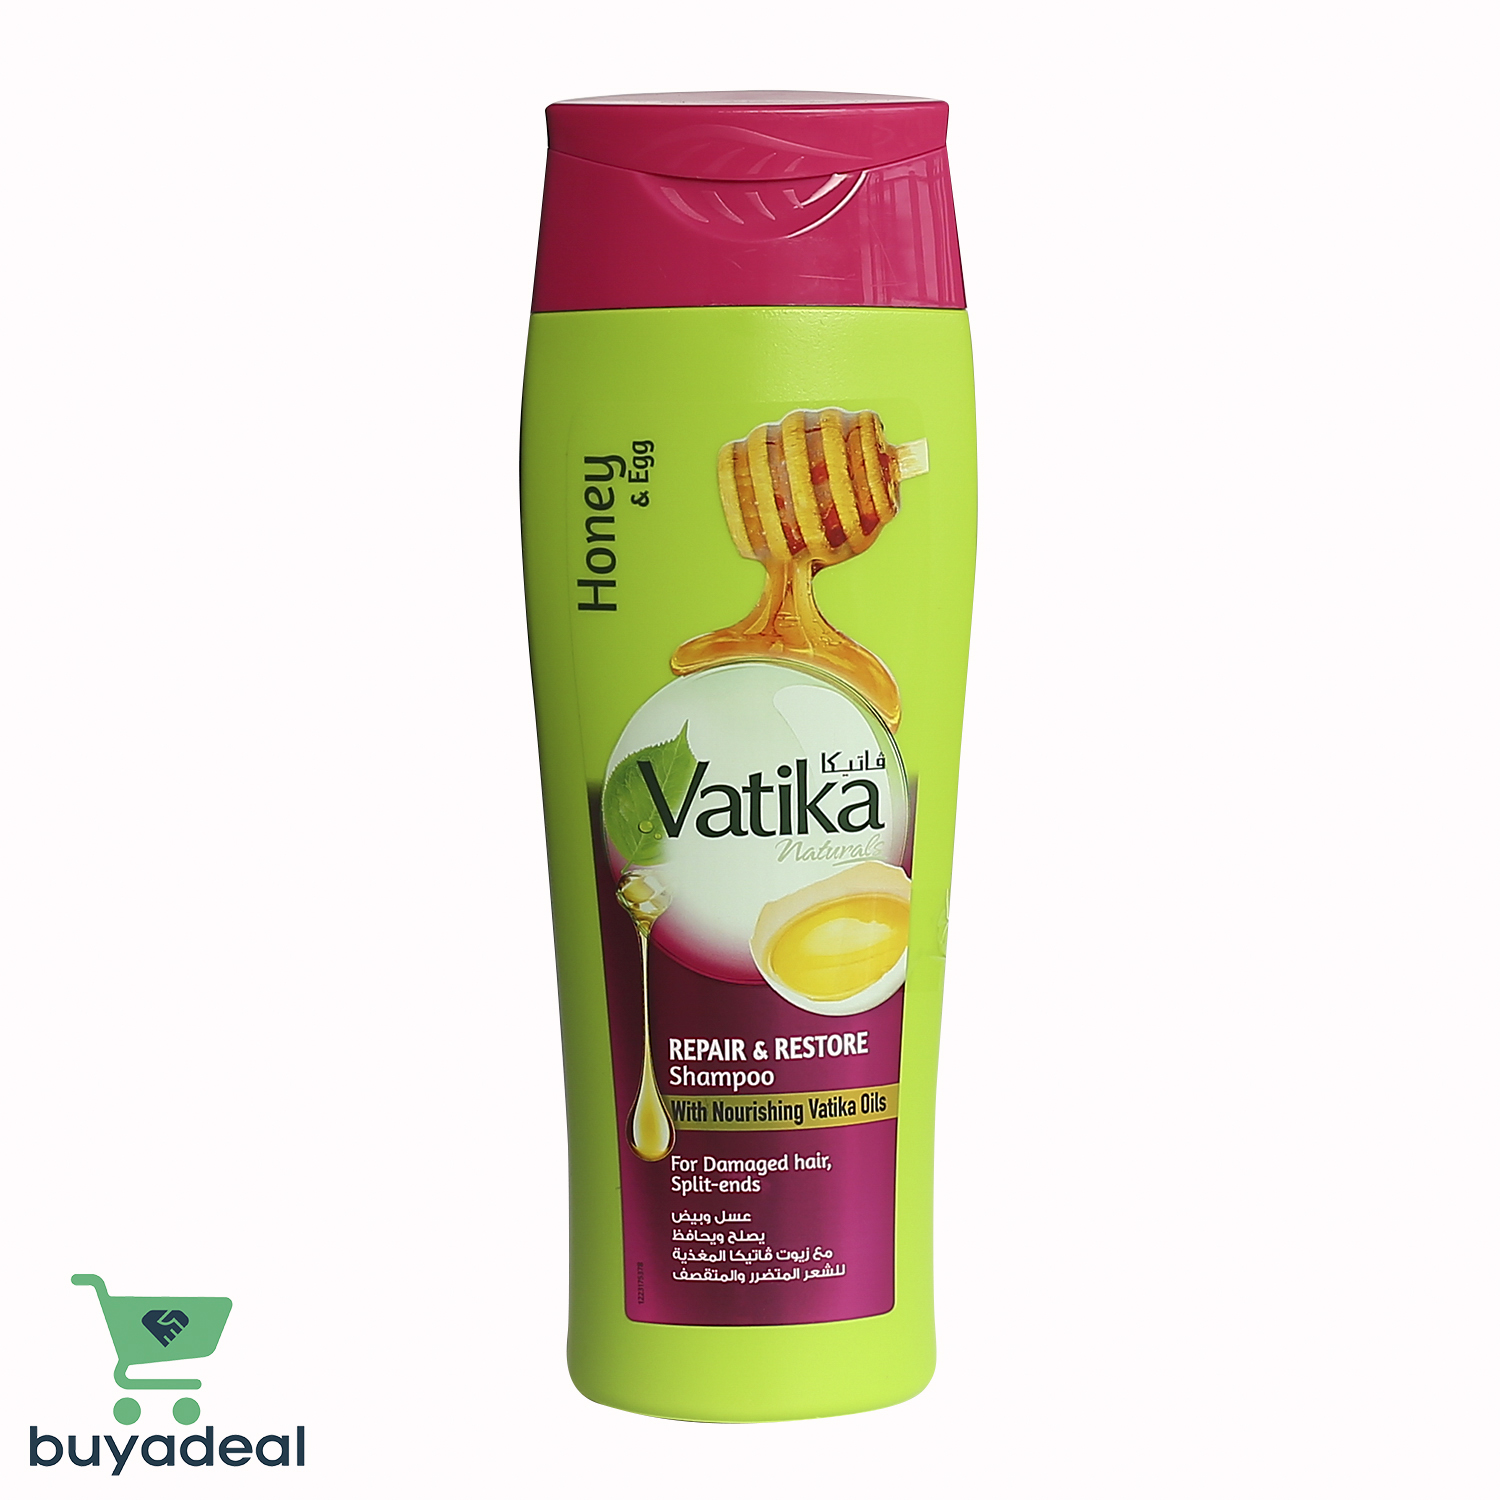 BUYADEAL productVatika Repair & Restore Shampoo - Honey & Egg 400ml